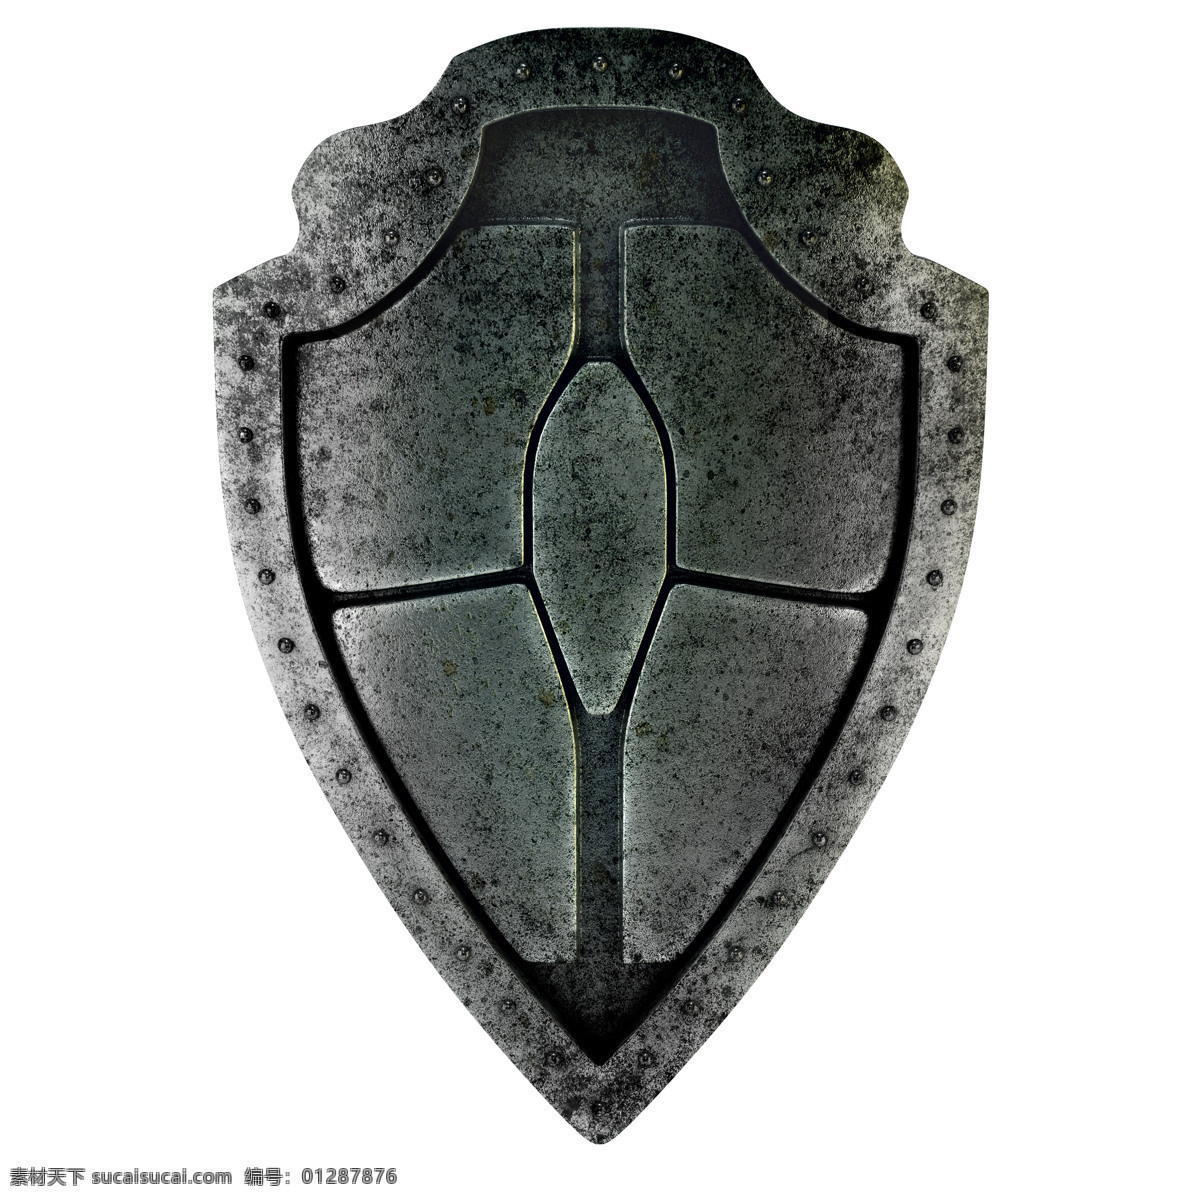 欧洲 骑士 盾牌 古代欧洲骑士 挡箭牌 金属盾牌 其他类别 生活百科